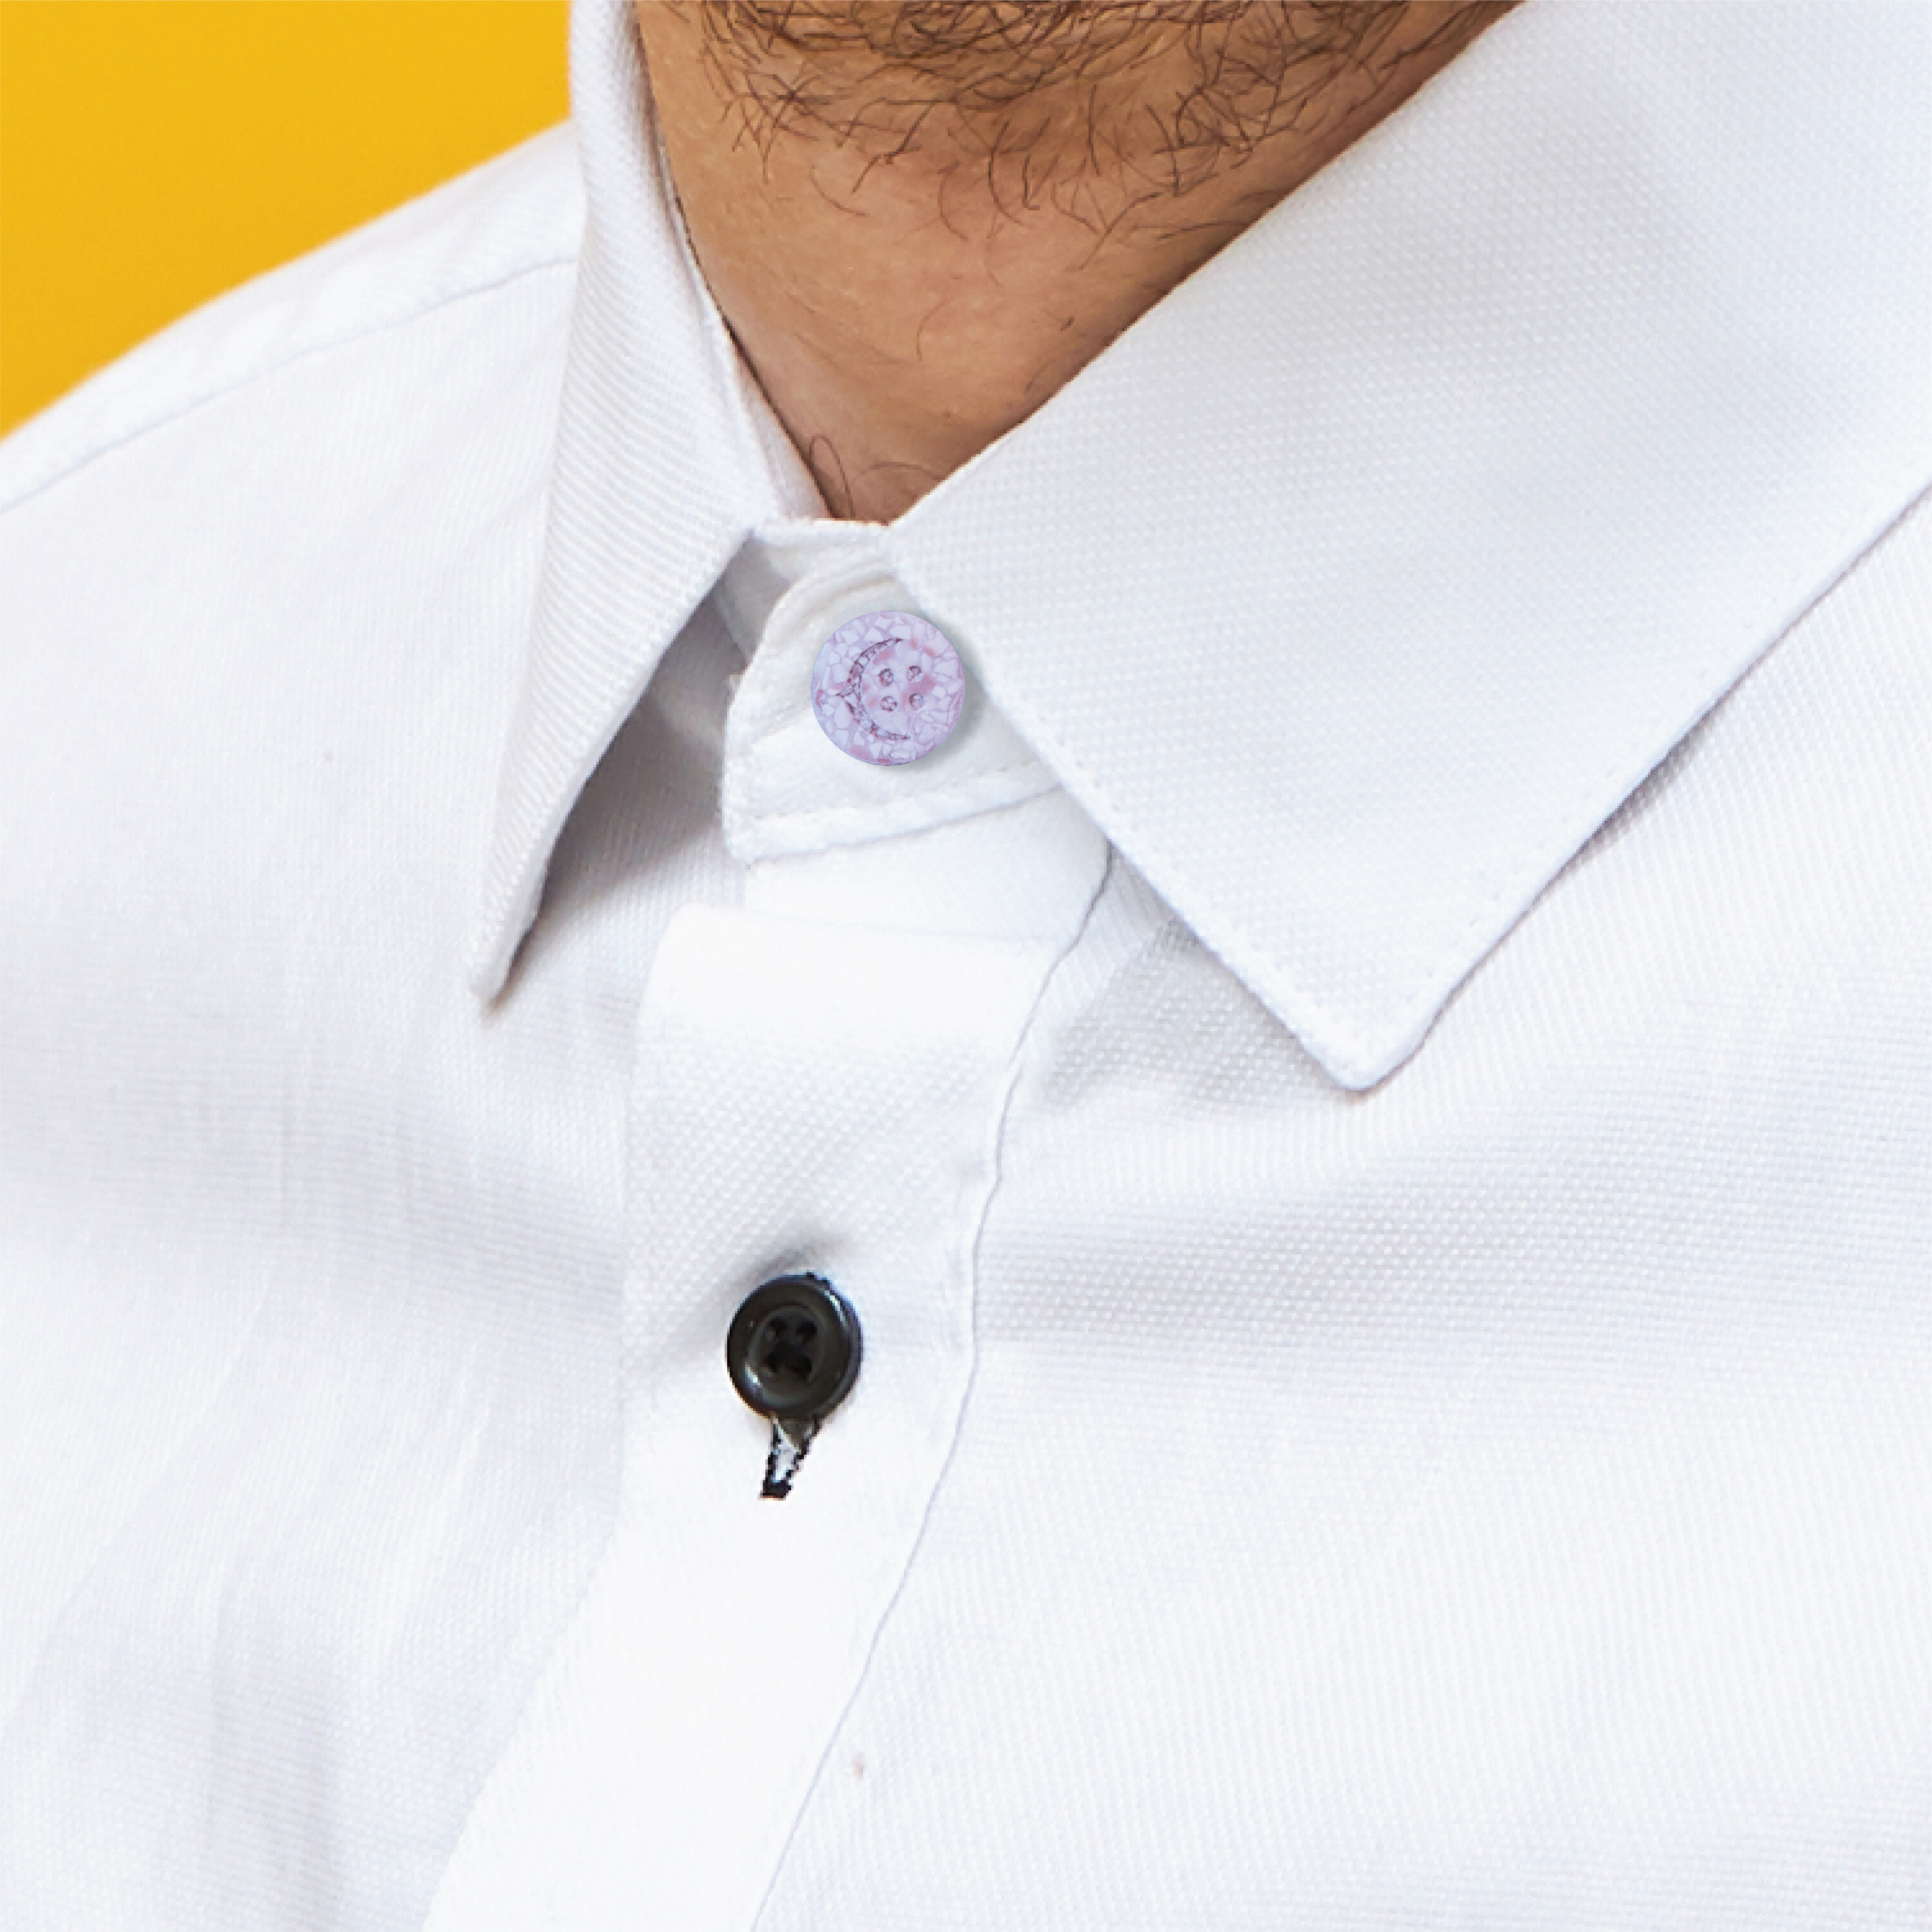 Shirt Collar Extenders (2pcs, Grey) Make your shirt comfortable